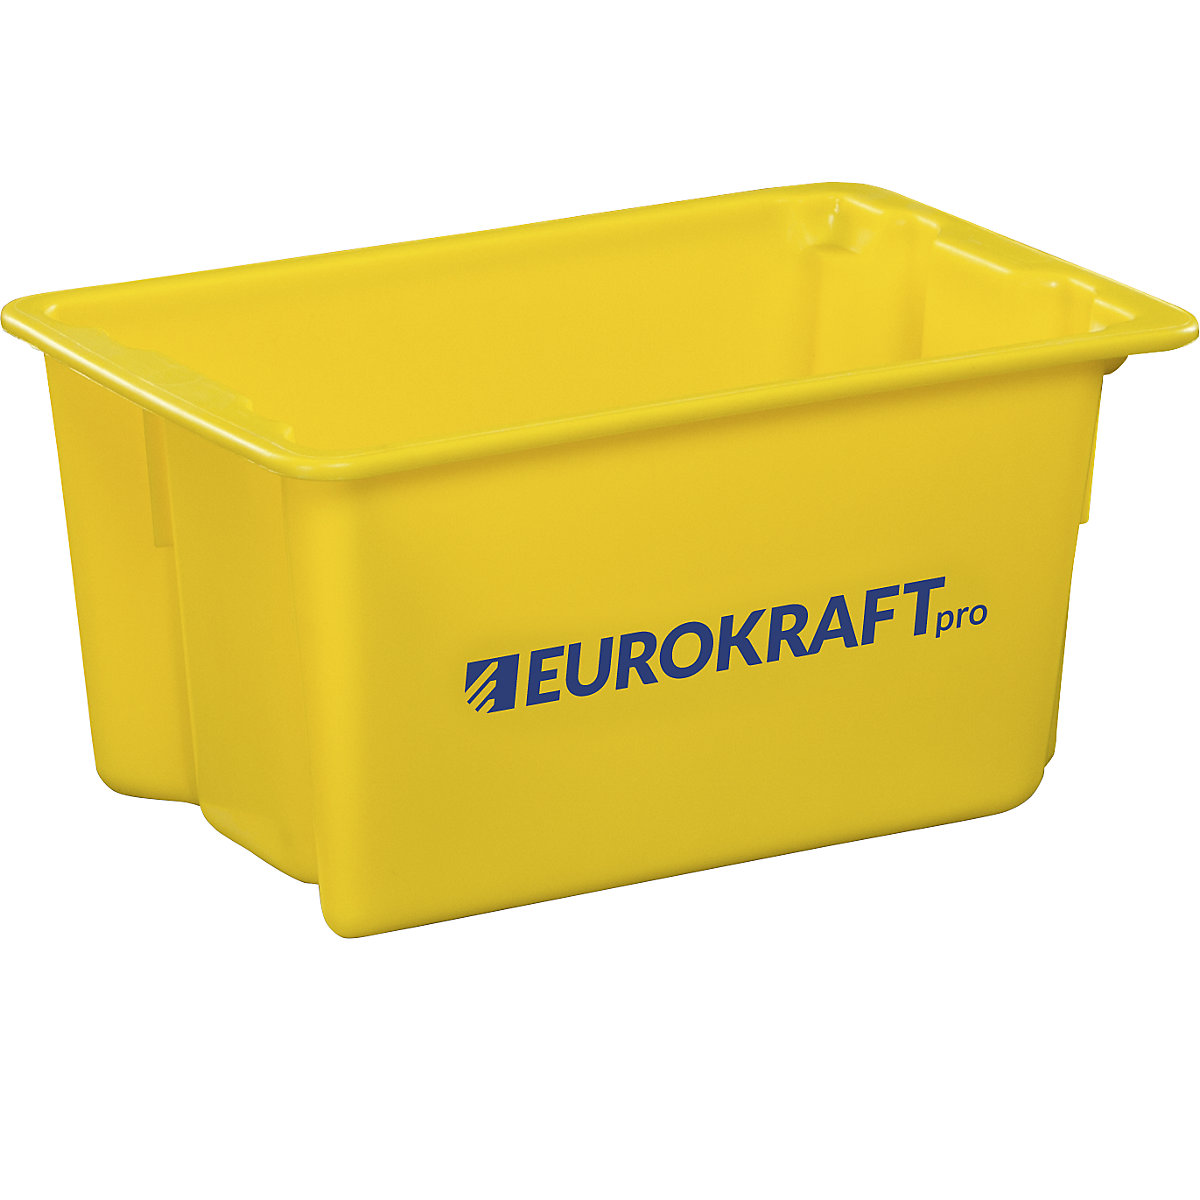 EUROKRAFTpro – Zasučna posoda za zlaganje iz polipropilena, primernega za živila, prostornina 50 l, DE 3 kosi, stene in dno zaprti, rumena